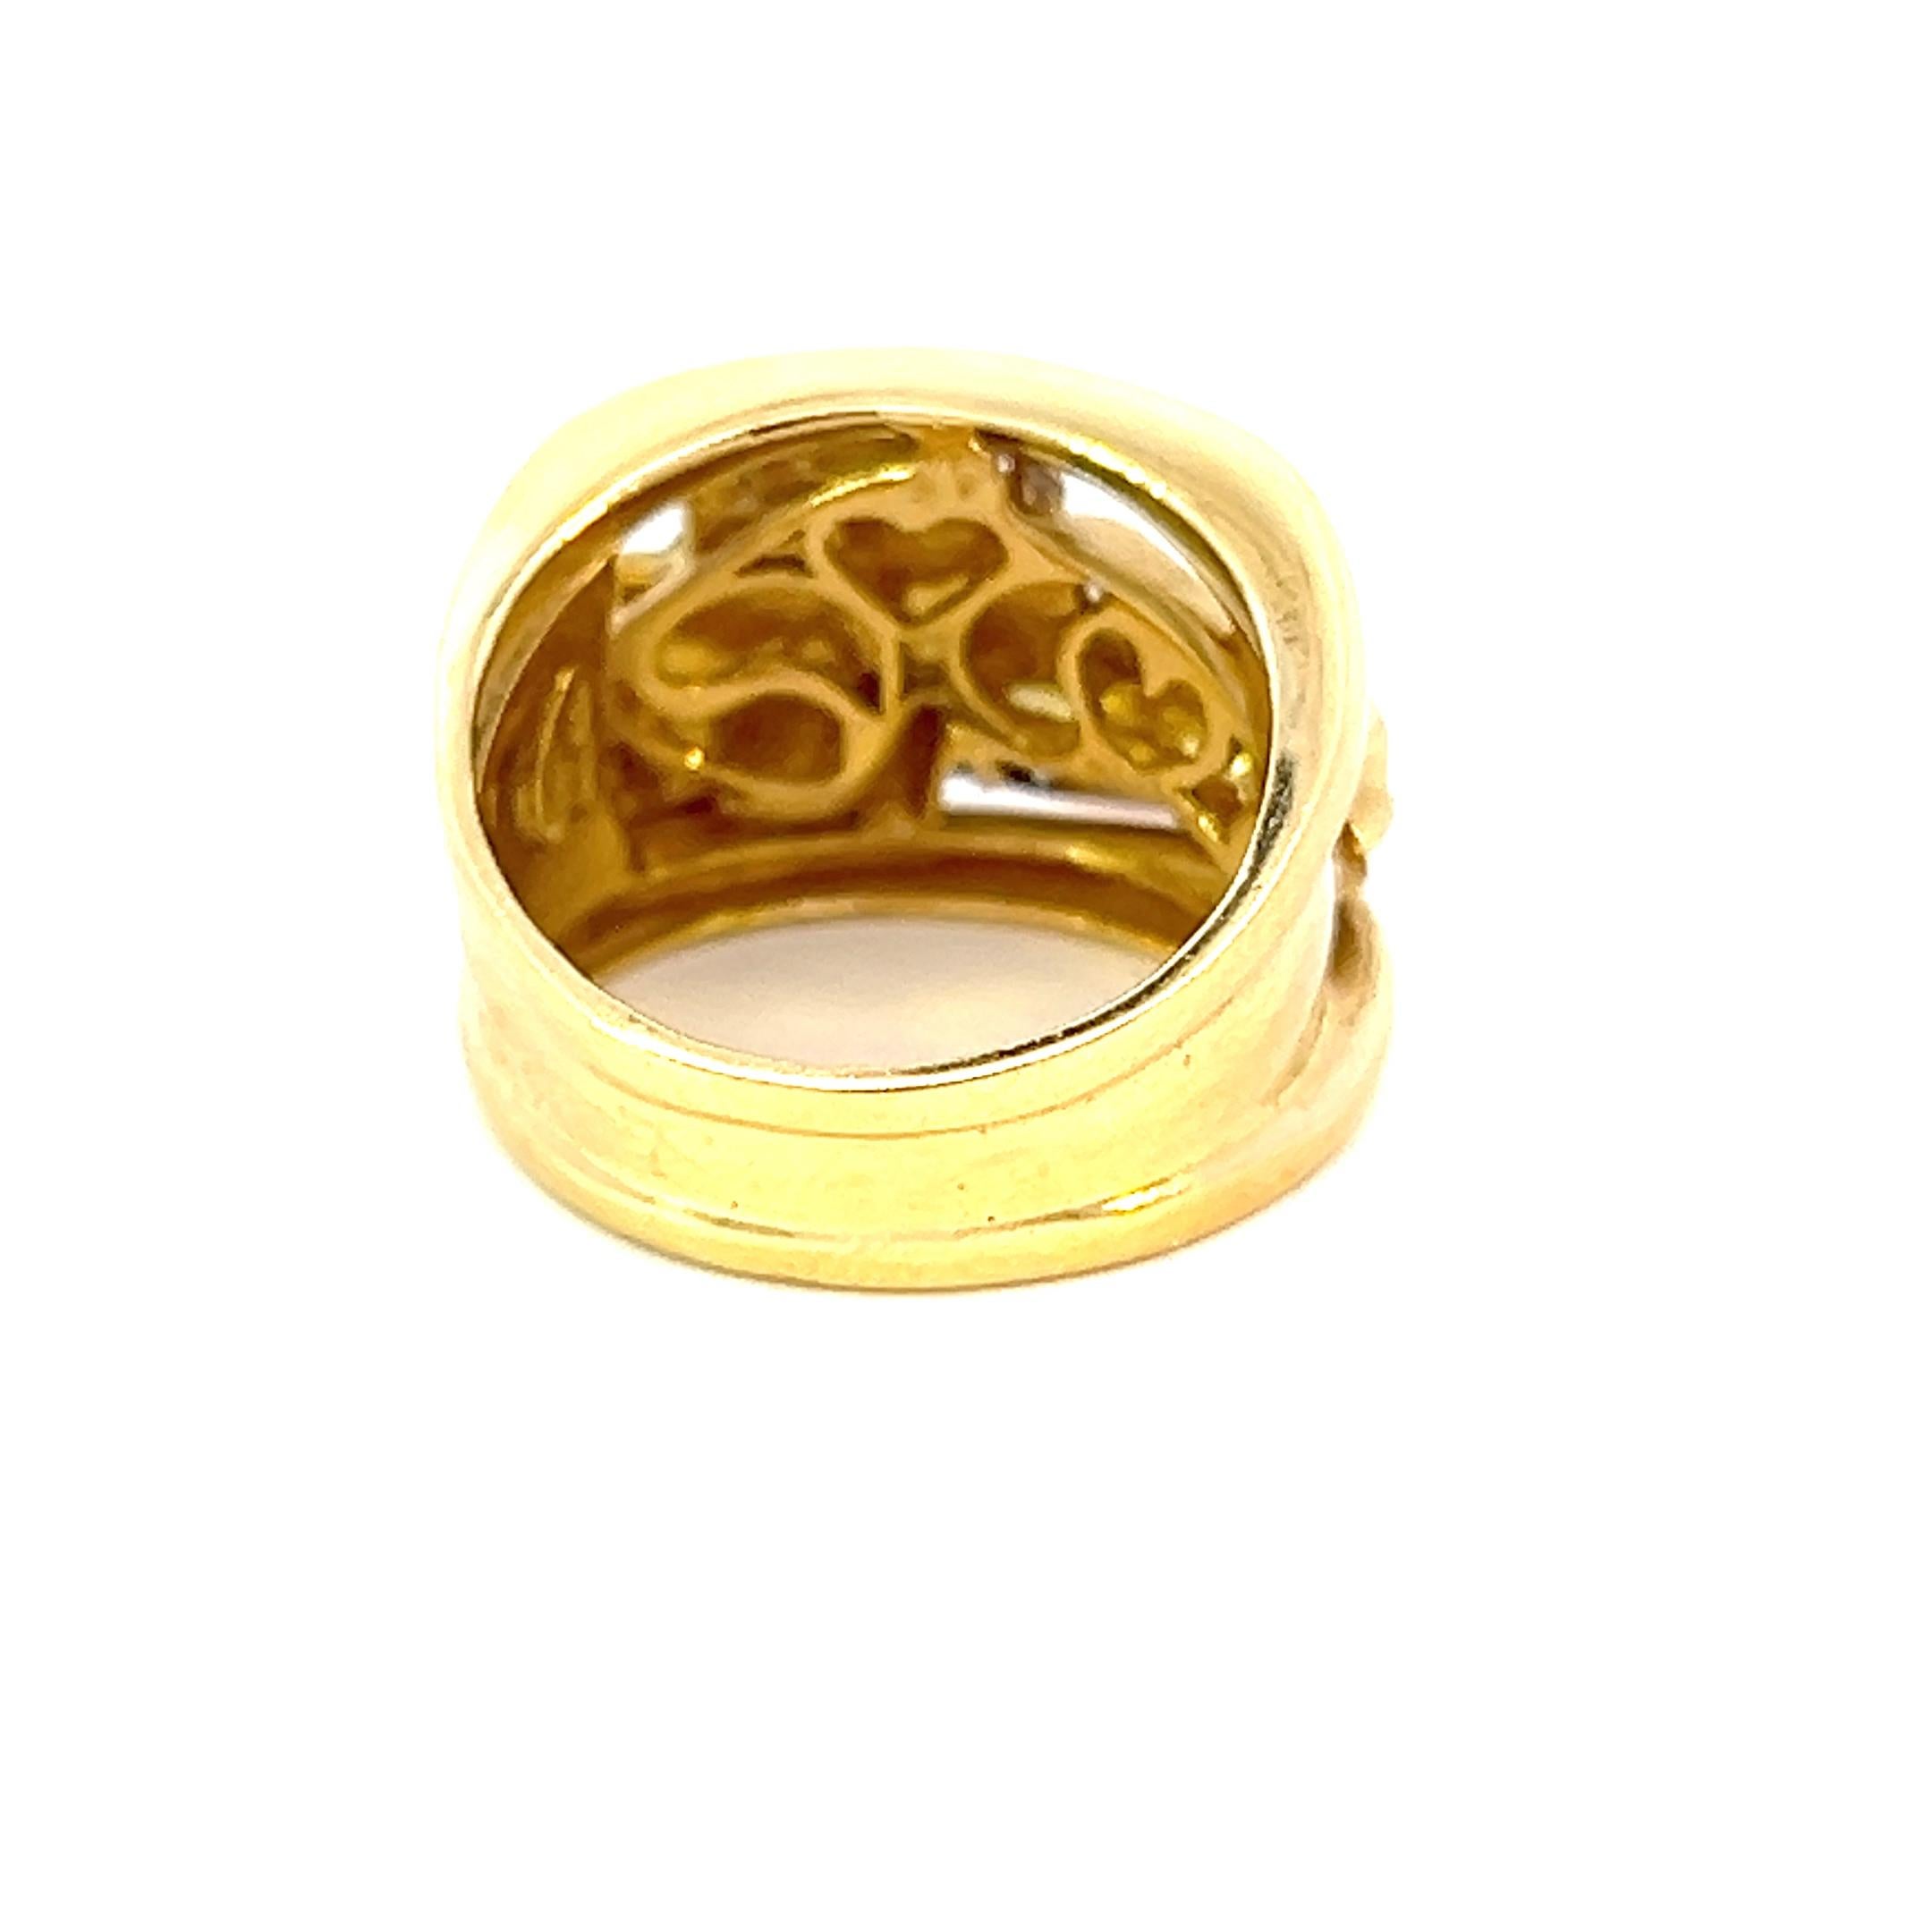 Dieser einzigartige Ring ist aus 18 Karat italienischem Weiß- und Gelbgold gefertigt und perfekt mit Diamanten besetzt. 